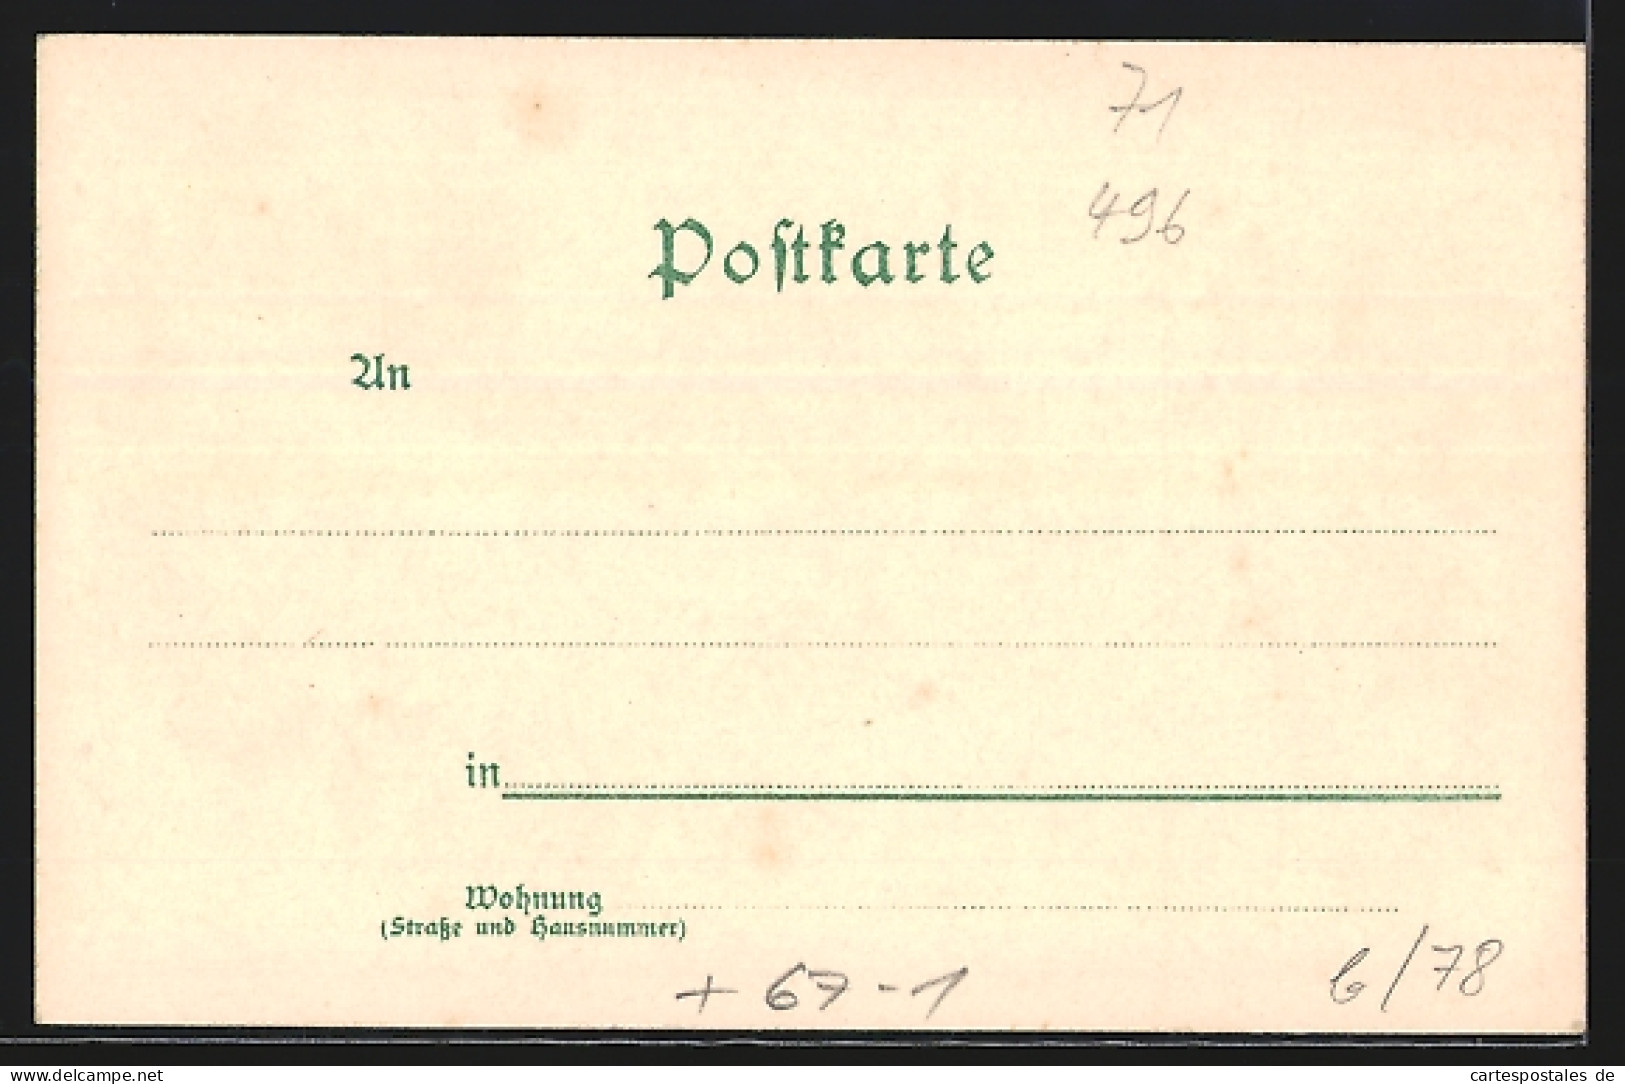 Lithographie Heilbronn, Industrie-Gewerbe Und Kunst-Ausstellung 1897, Strassenpartie Im Zentrum  - Expositions